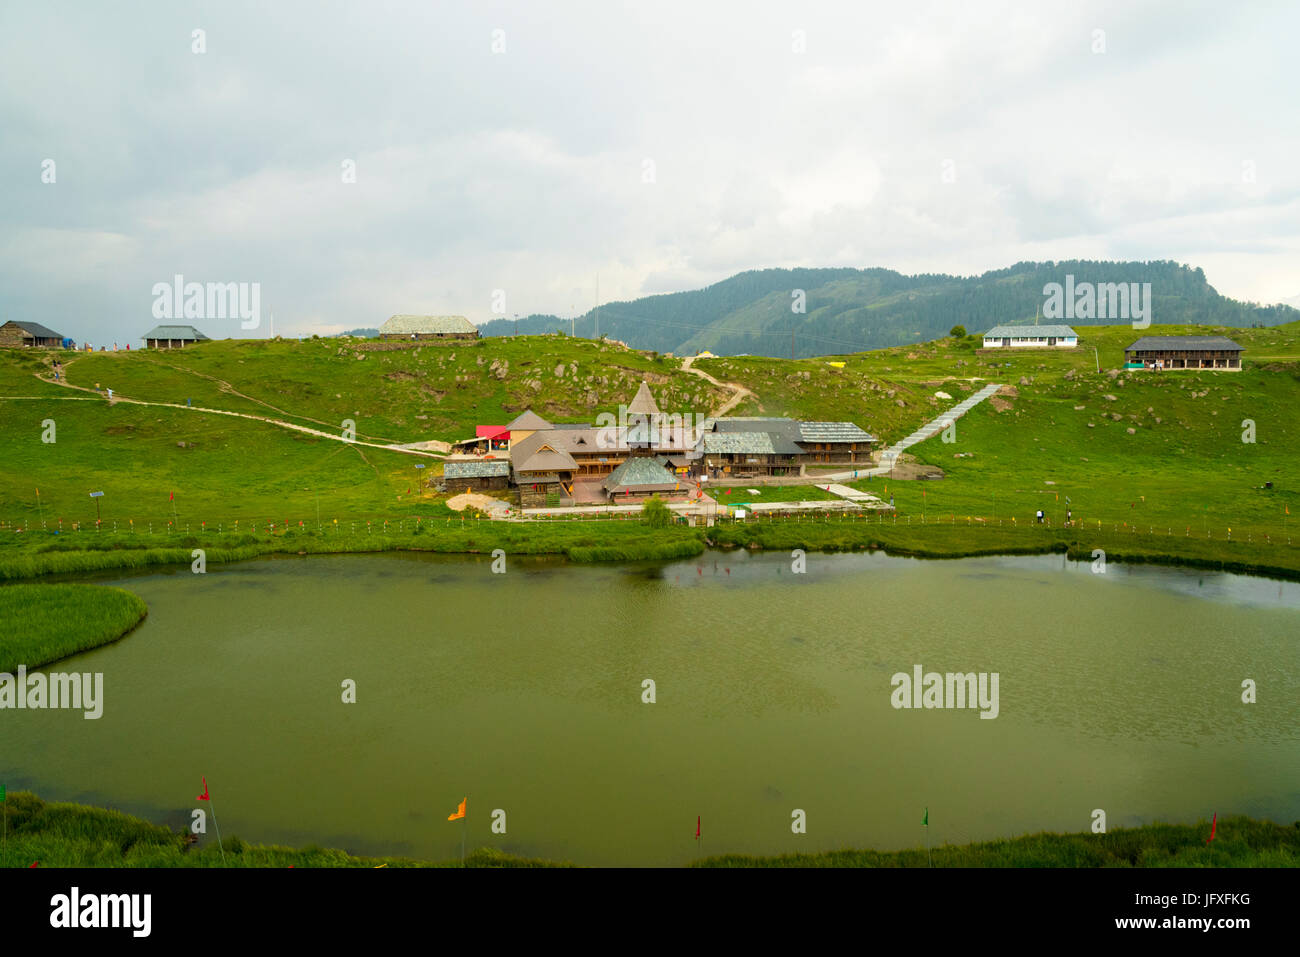 Ancien Temple Lac Prashar Prashar avec vue sur l'étang de l'eau sainte et vert nature paysage à Prashar Lake district, Mandi, Himachal Pradesh, Inde Asie Banque D'Images